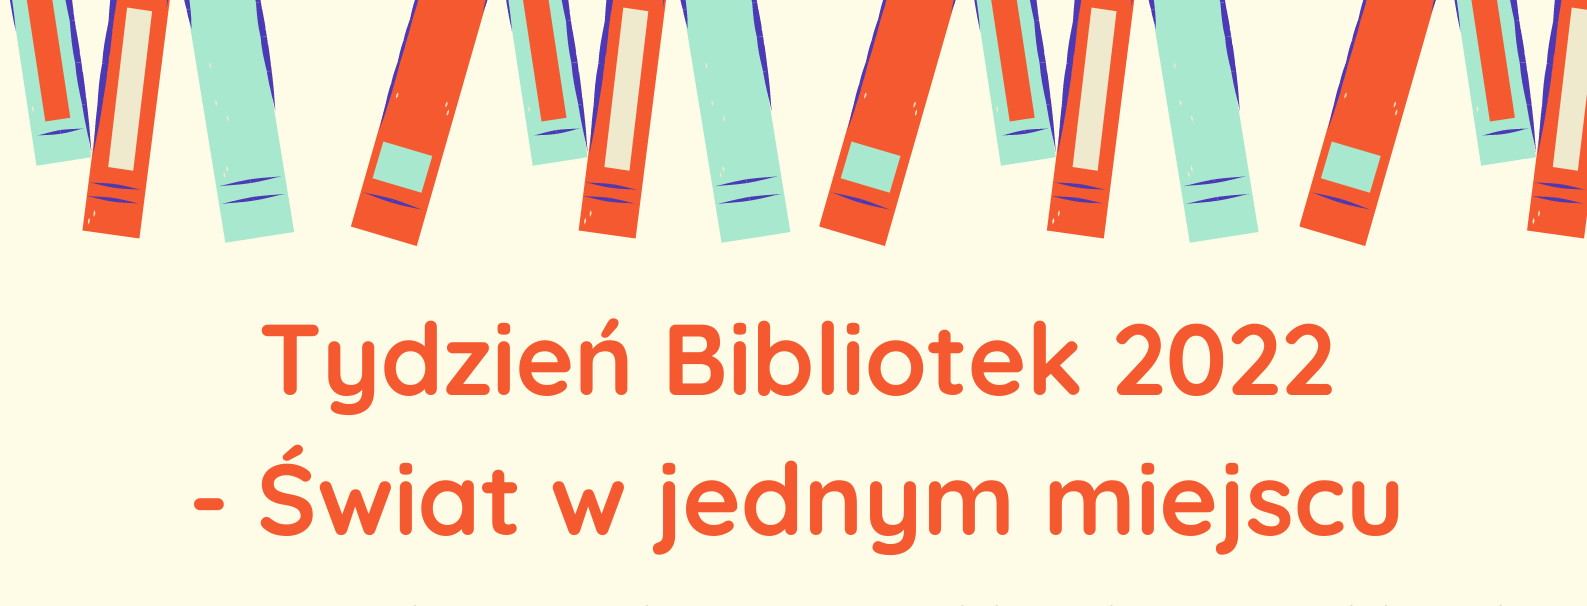 Tydzień Bibliotek 2022 - Świat w jednym miejscu